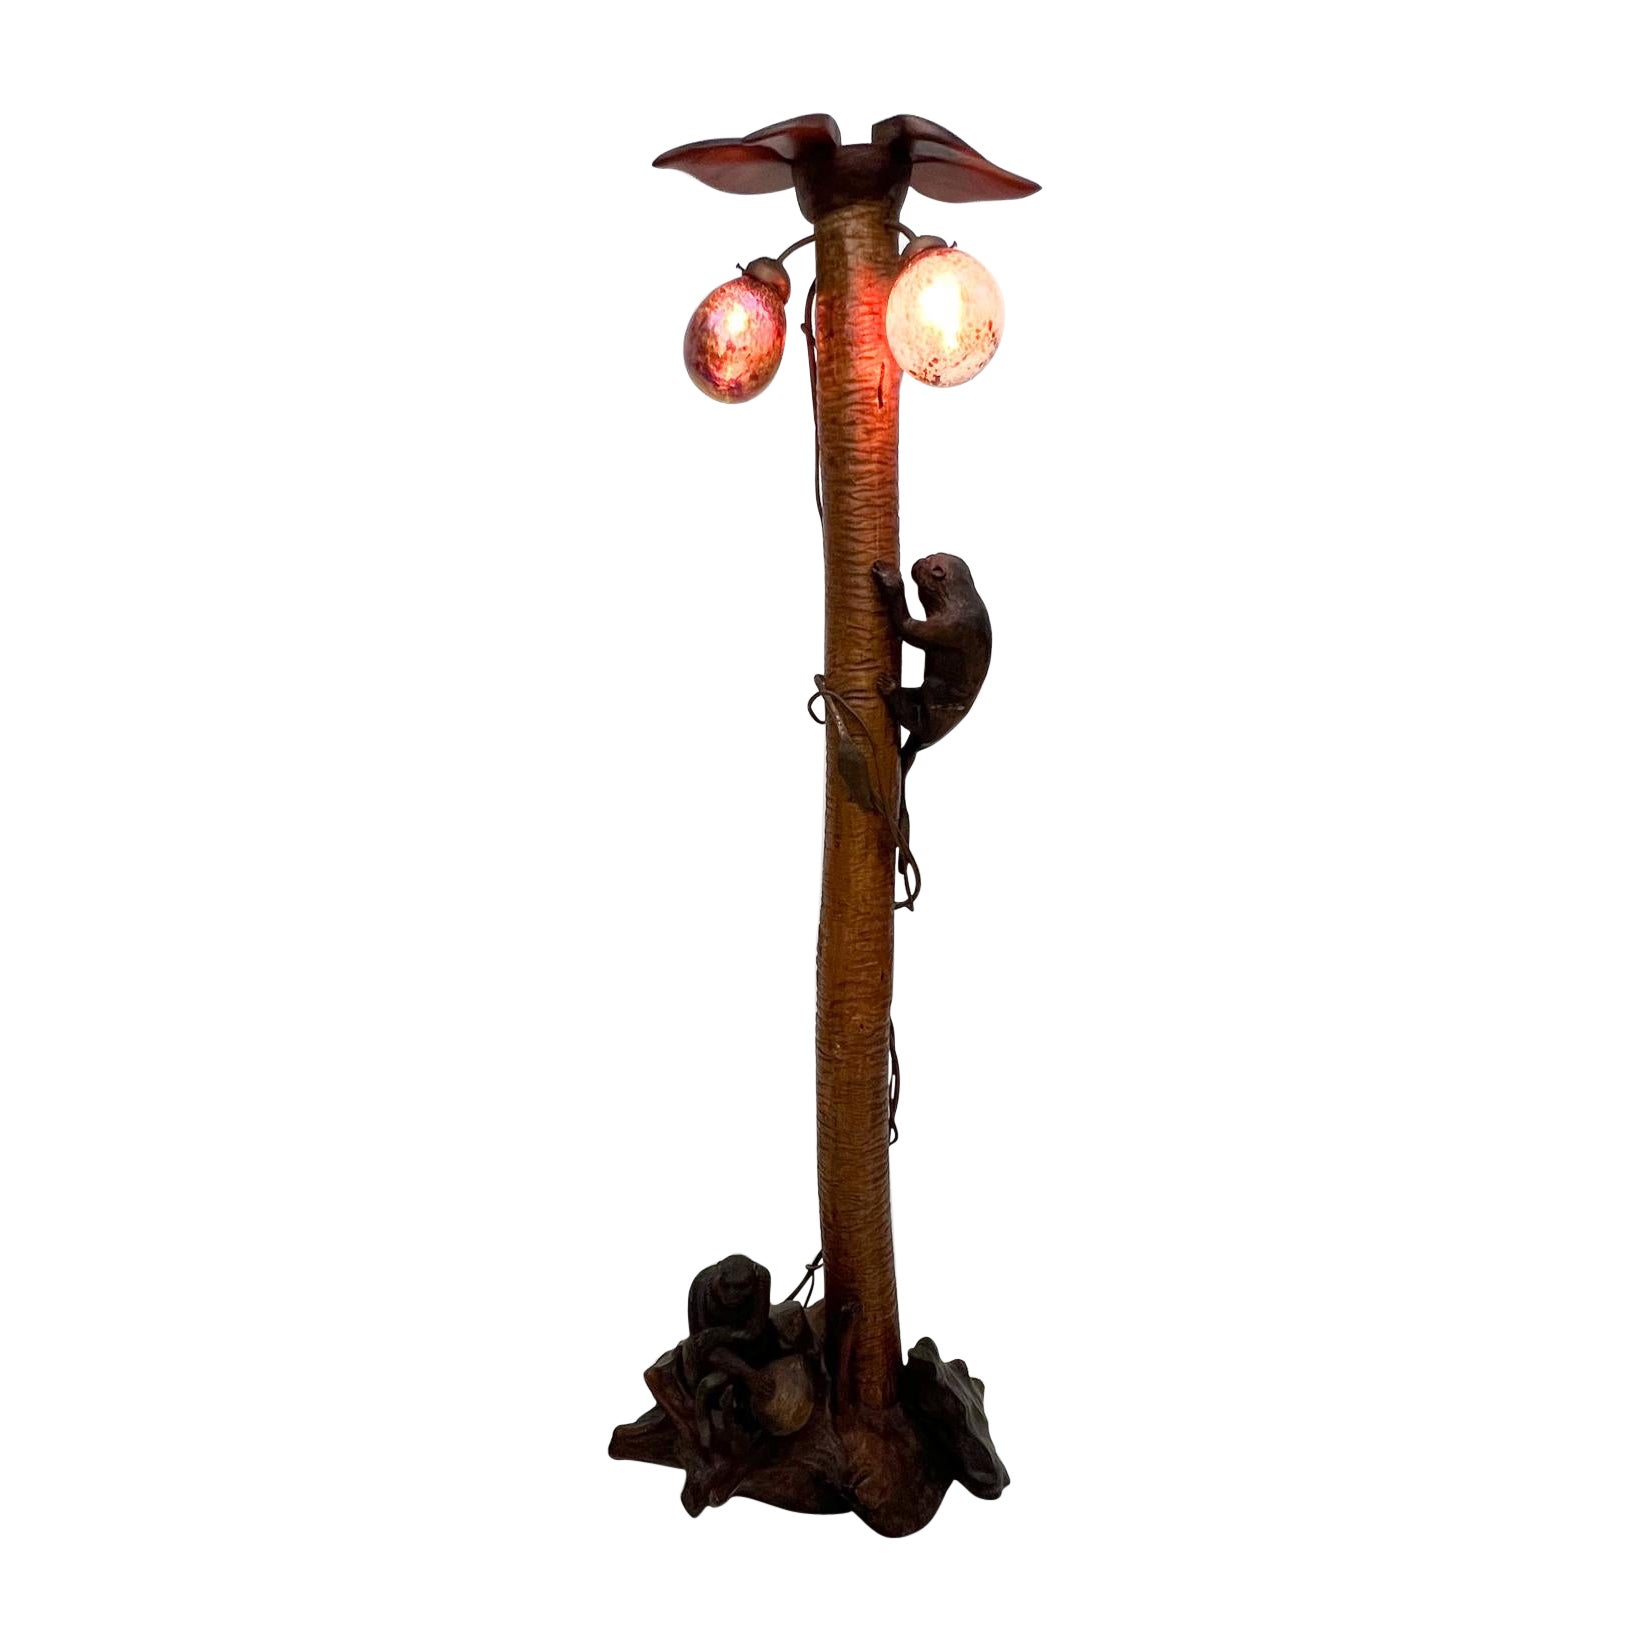 1984 John Barber lampe de sol en verre exotique singe singe arbre habitat naturel art
Cuivre métal solide bois sculpté à la main verre d'art.
Fabriqué à la main dans le style de Mario Lopes Torres
Signature de l'artiste, difficile à